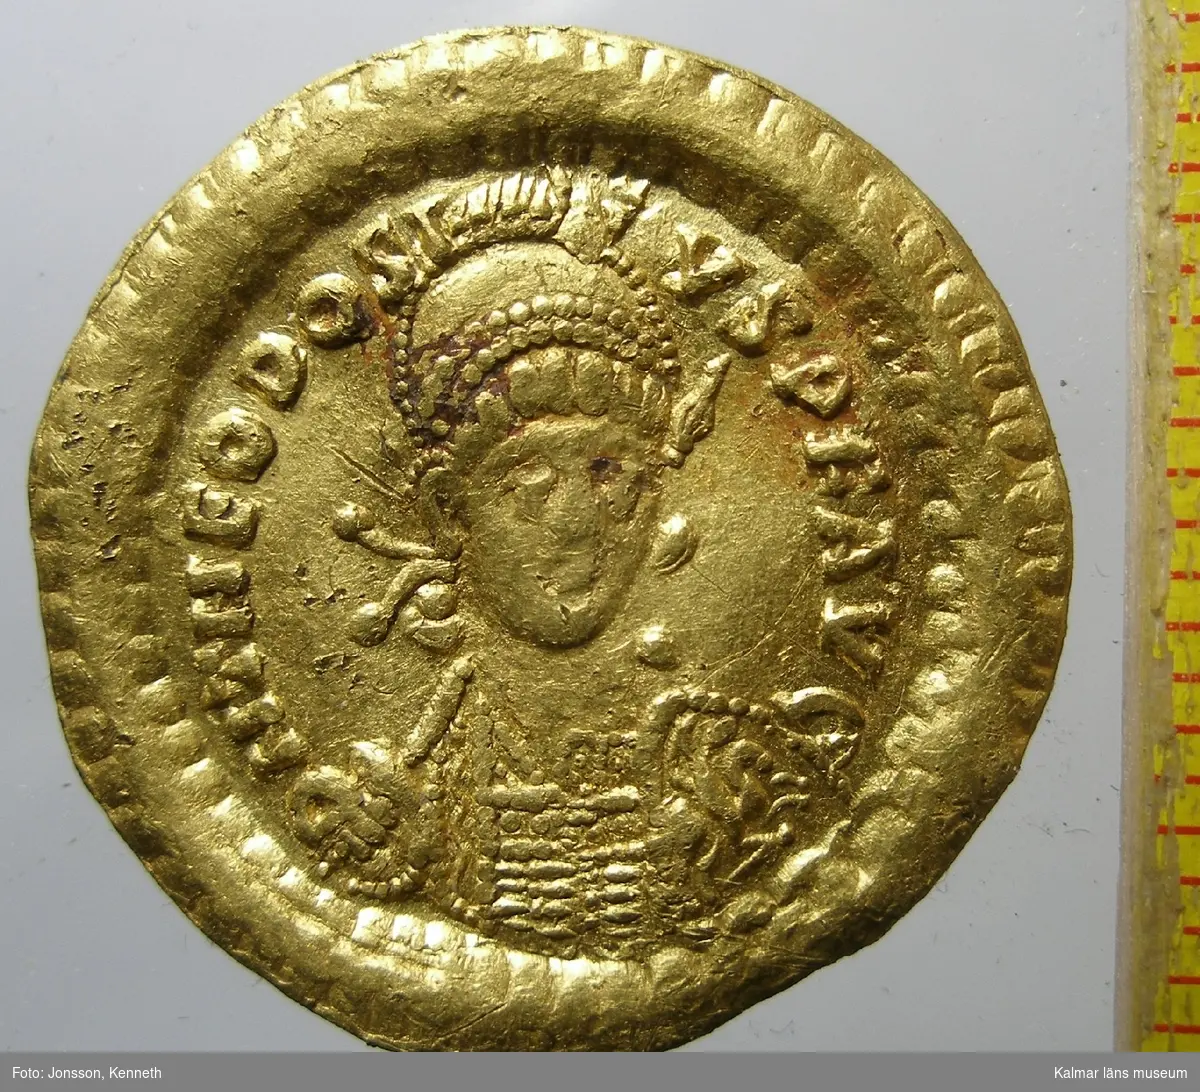 KLM 35517 Mynt av guld. Solidus. Präglat för Theodosius II (408-450). Bestämning: Tolsby, Tolstoy pl 5:23, RICX324.